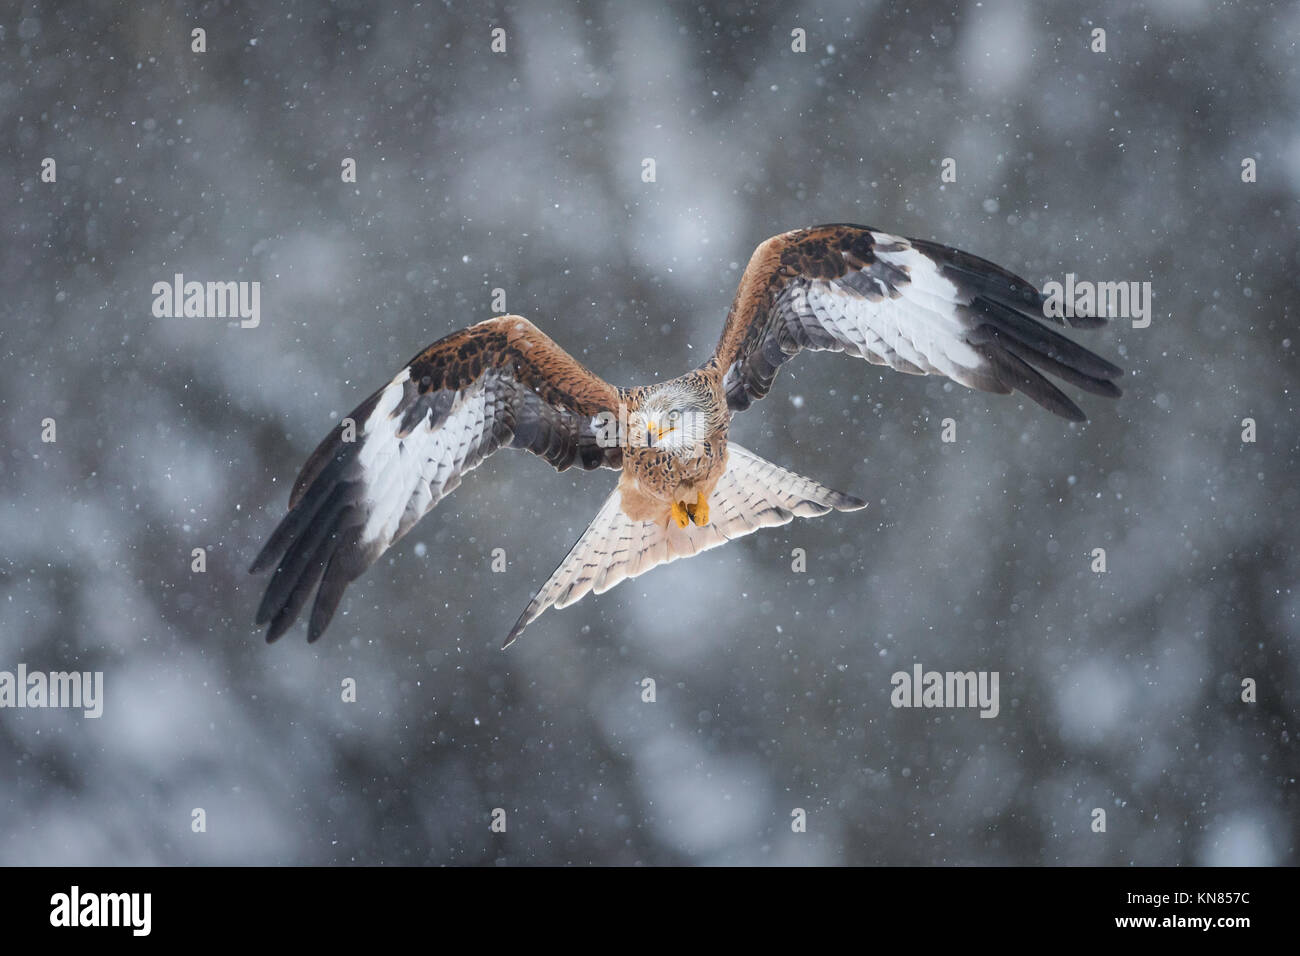 Le Milan royal (Milvus milvus) voler dans les fortes chutes de neige. Rhayader, Wales, UK - décembre Banque D'Images